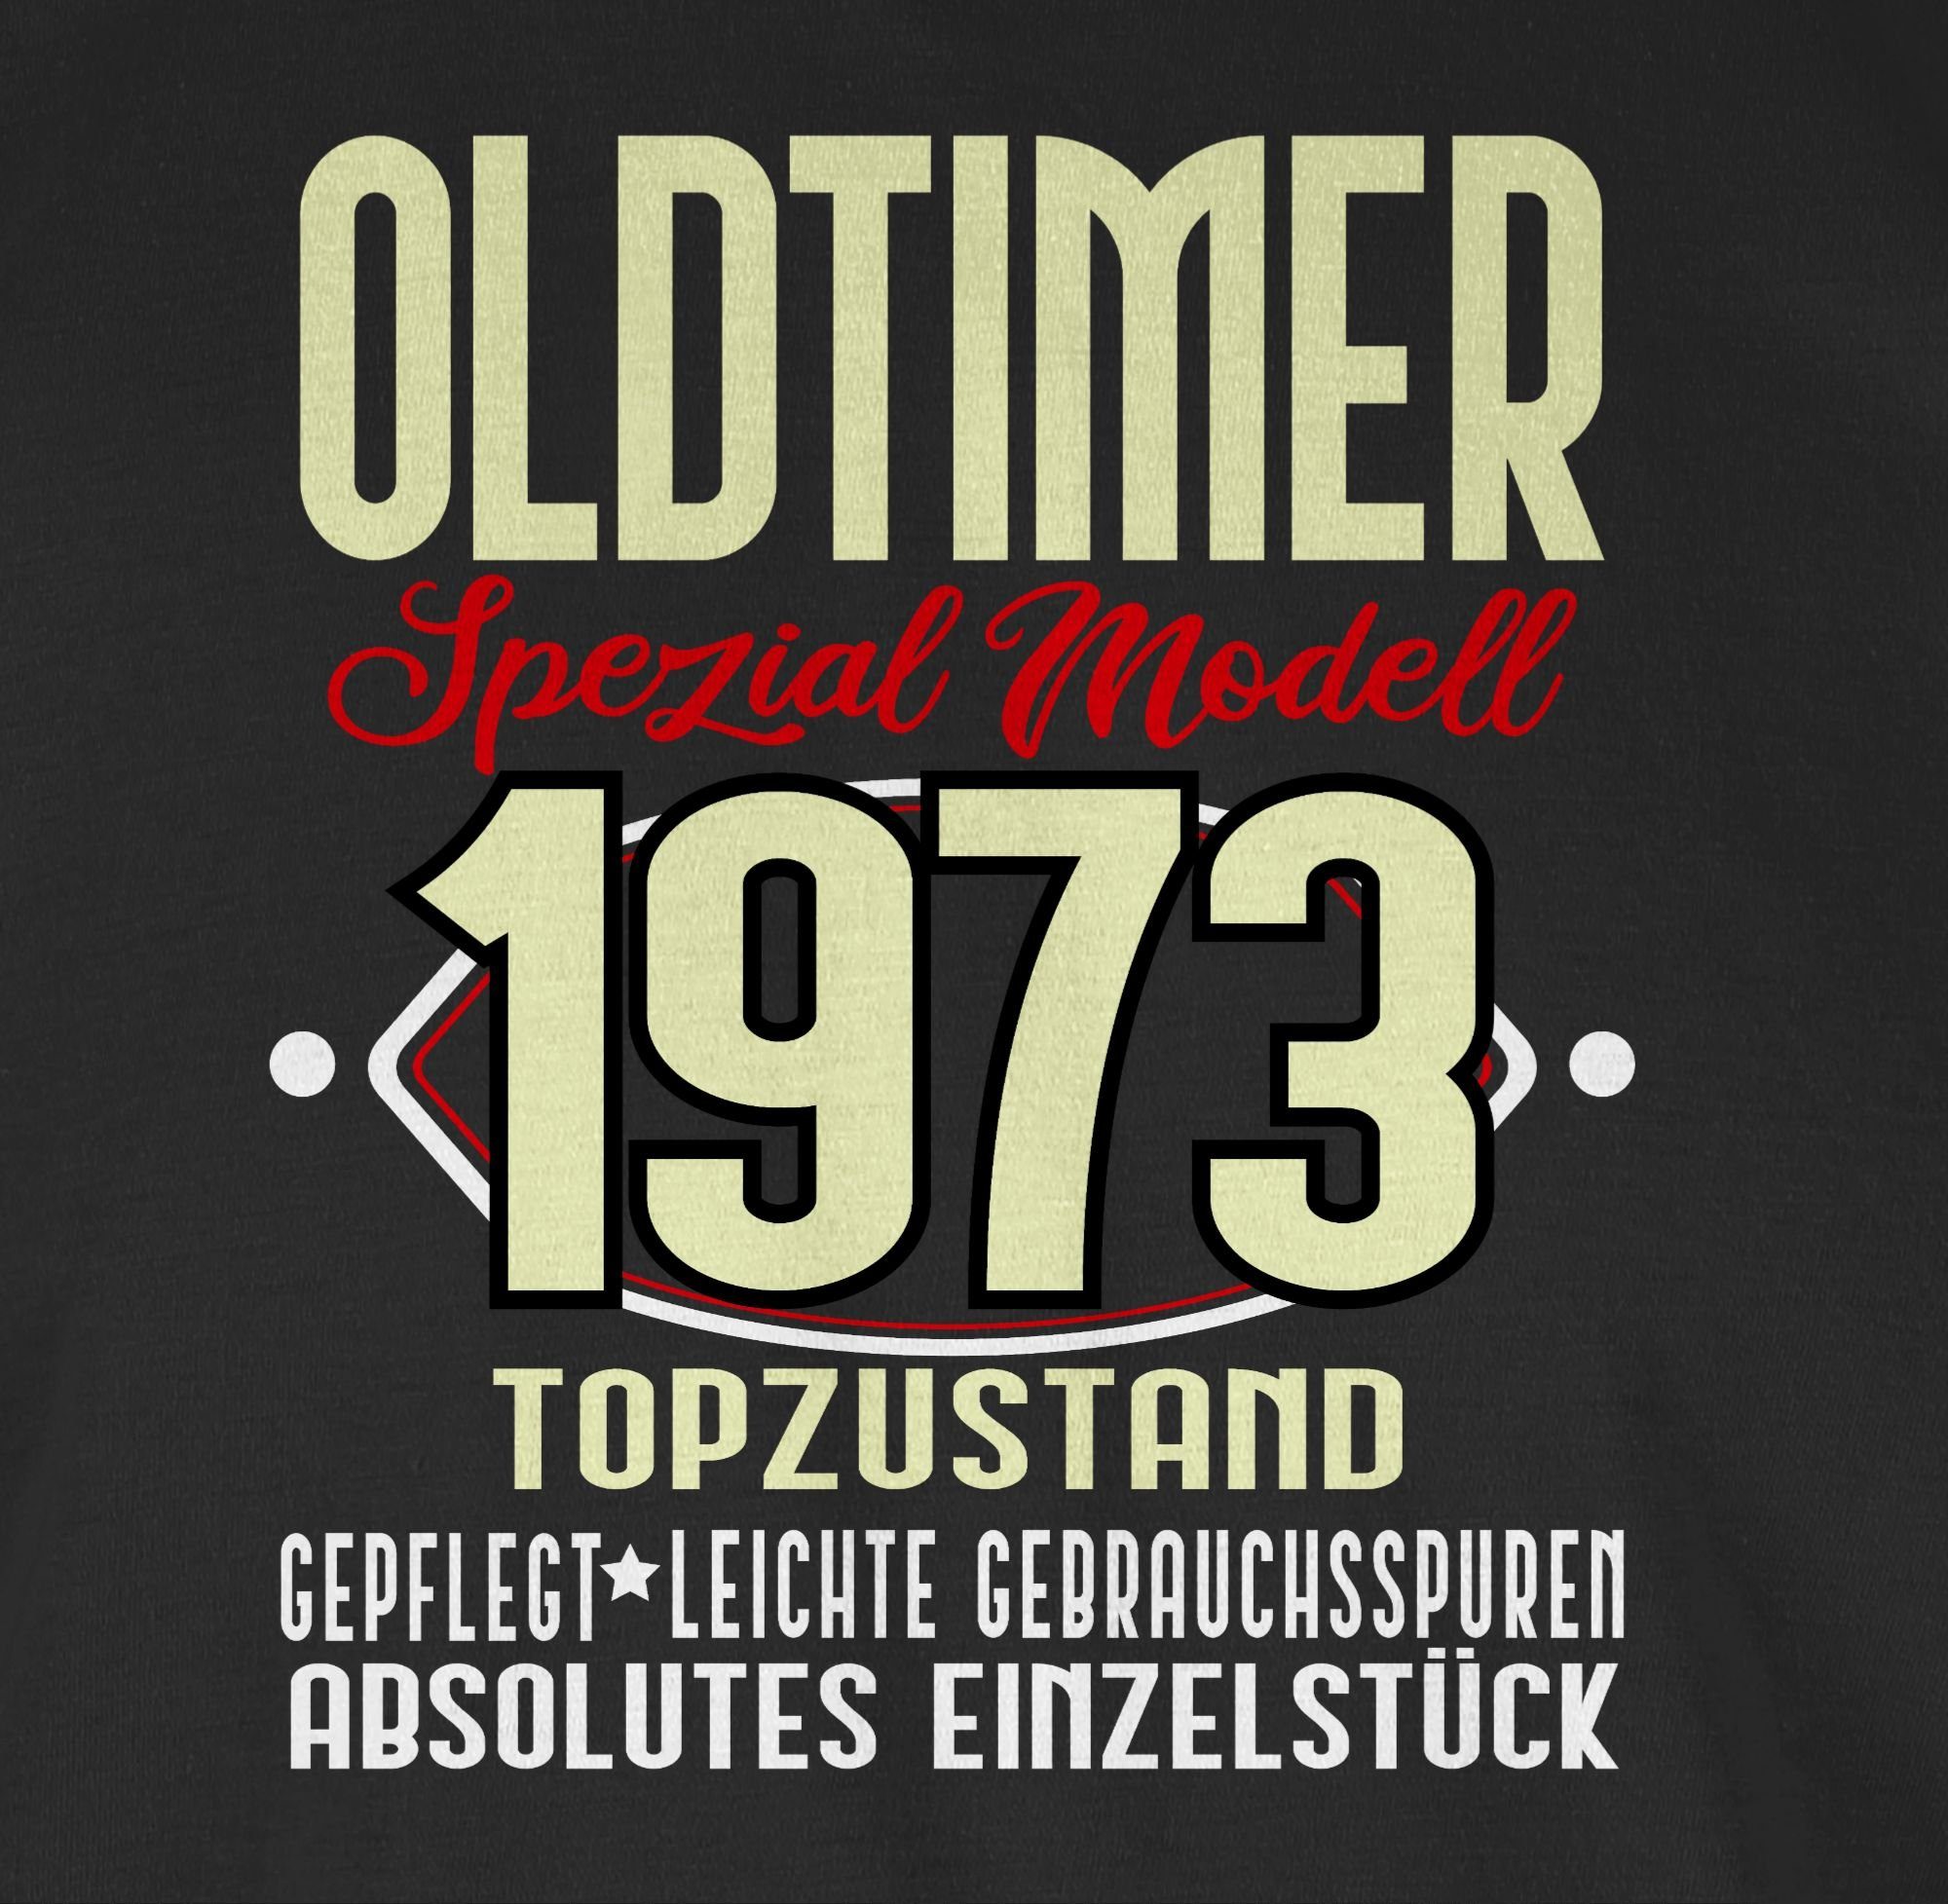 Shirtracer T-Shirt Oldtimer 50. Spezial 1973 Modell Fünfzigster 01 Schwarz Geburtstag